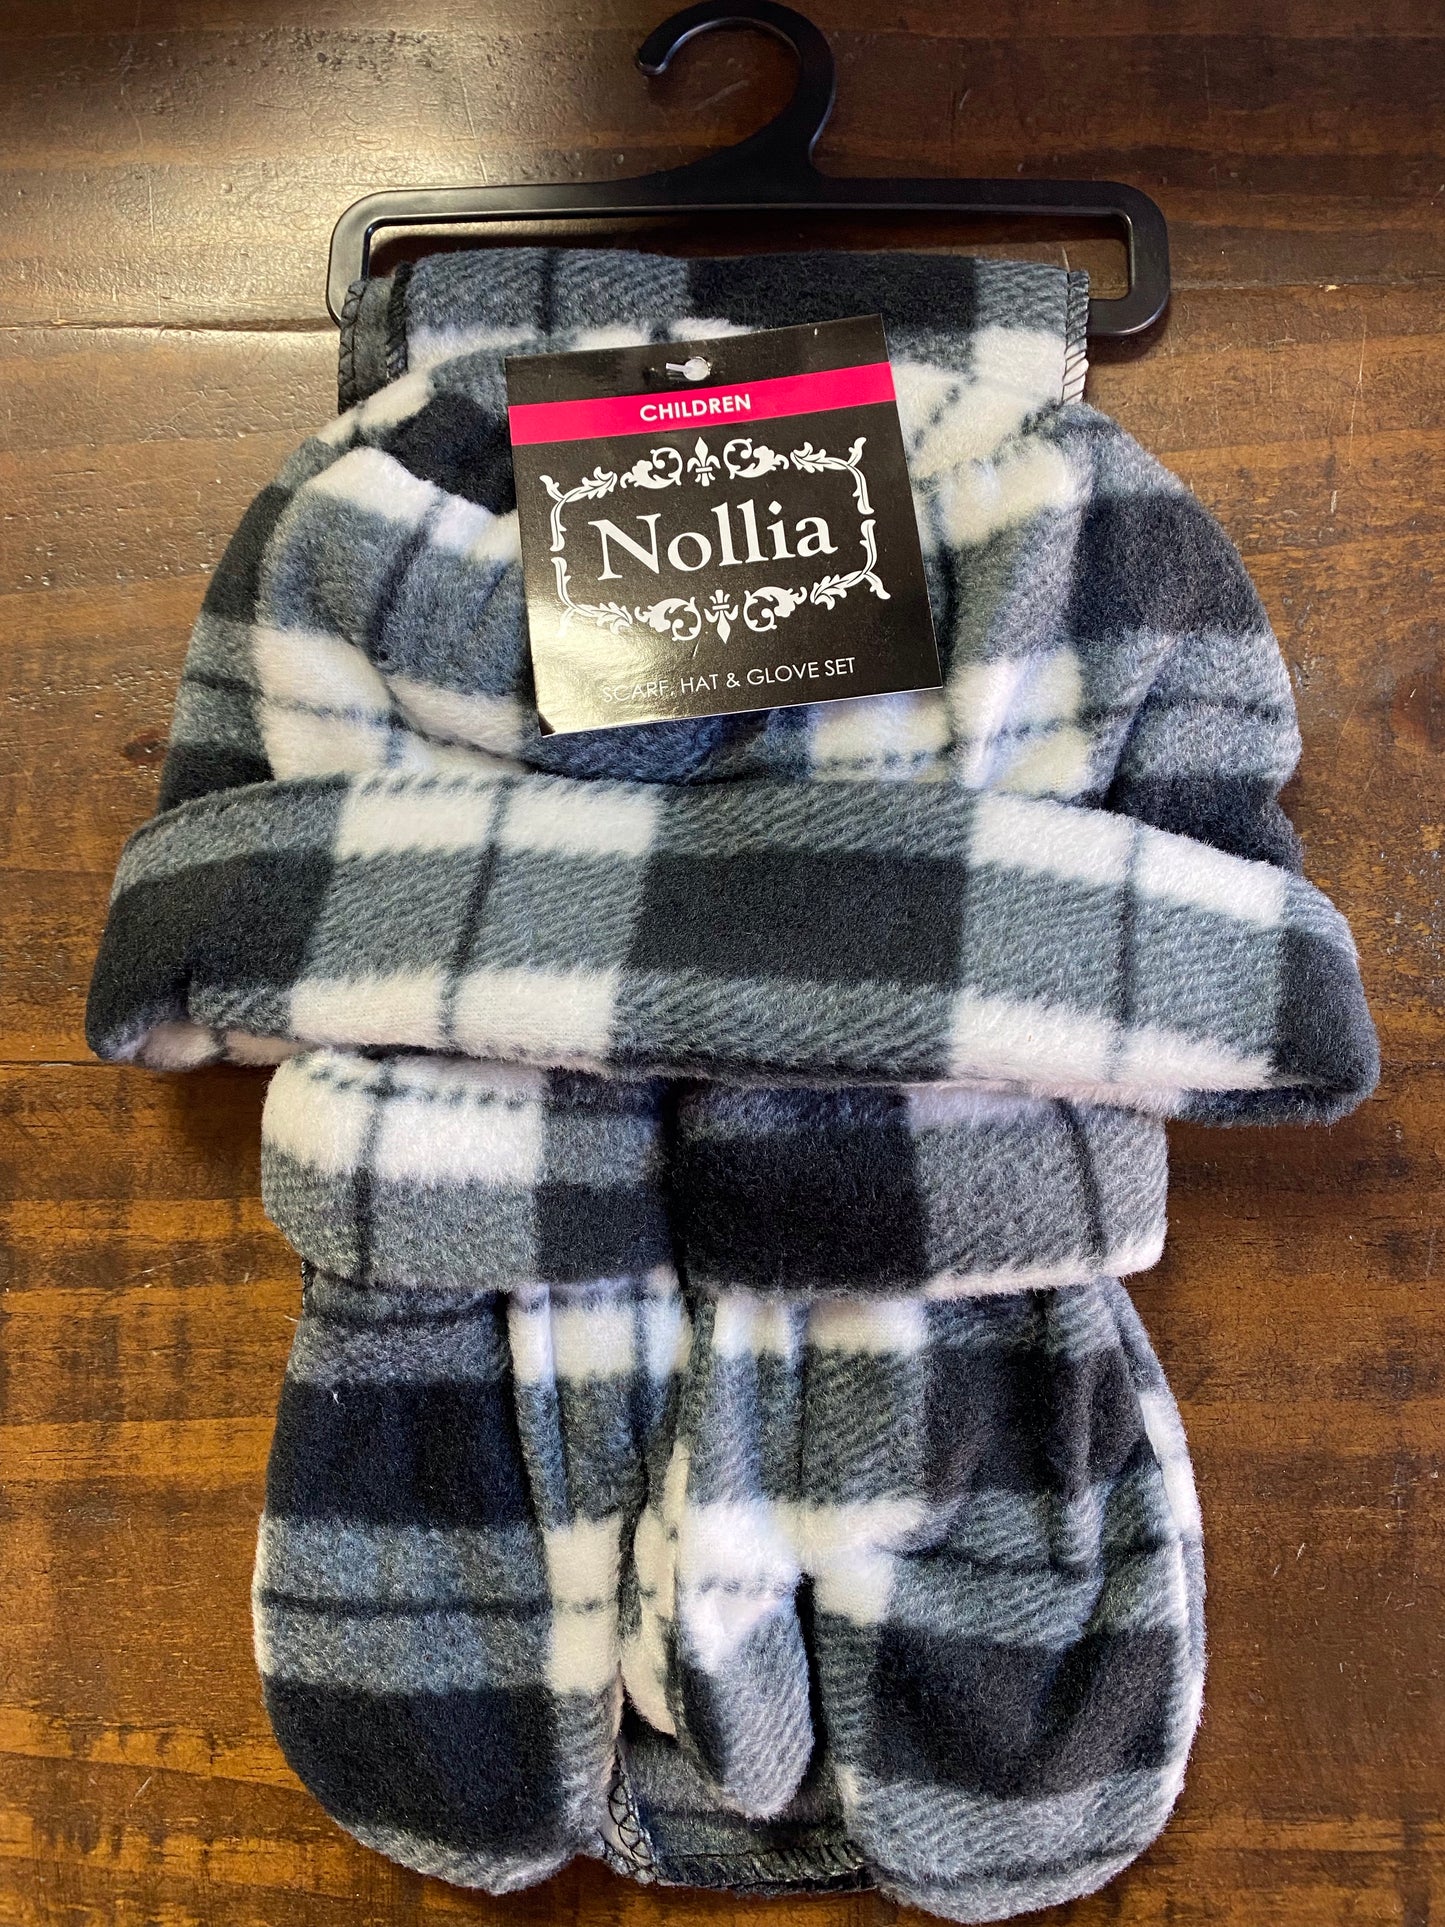 Nollia Children’s Scarf, Hat & Mitten Set - Whitt & Co. Clothing